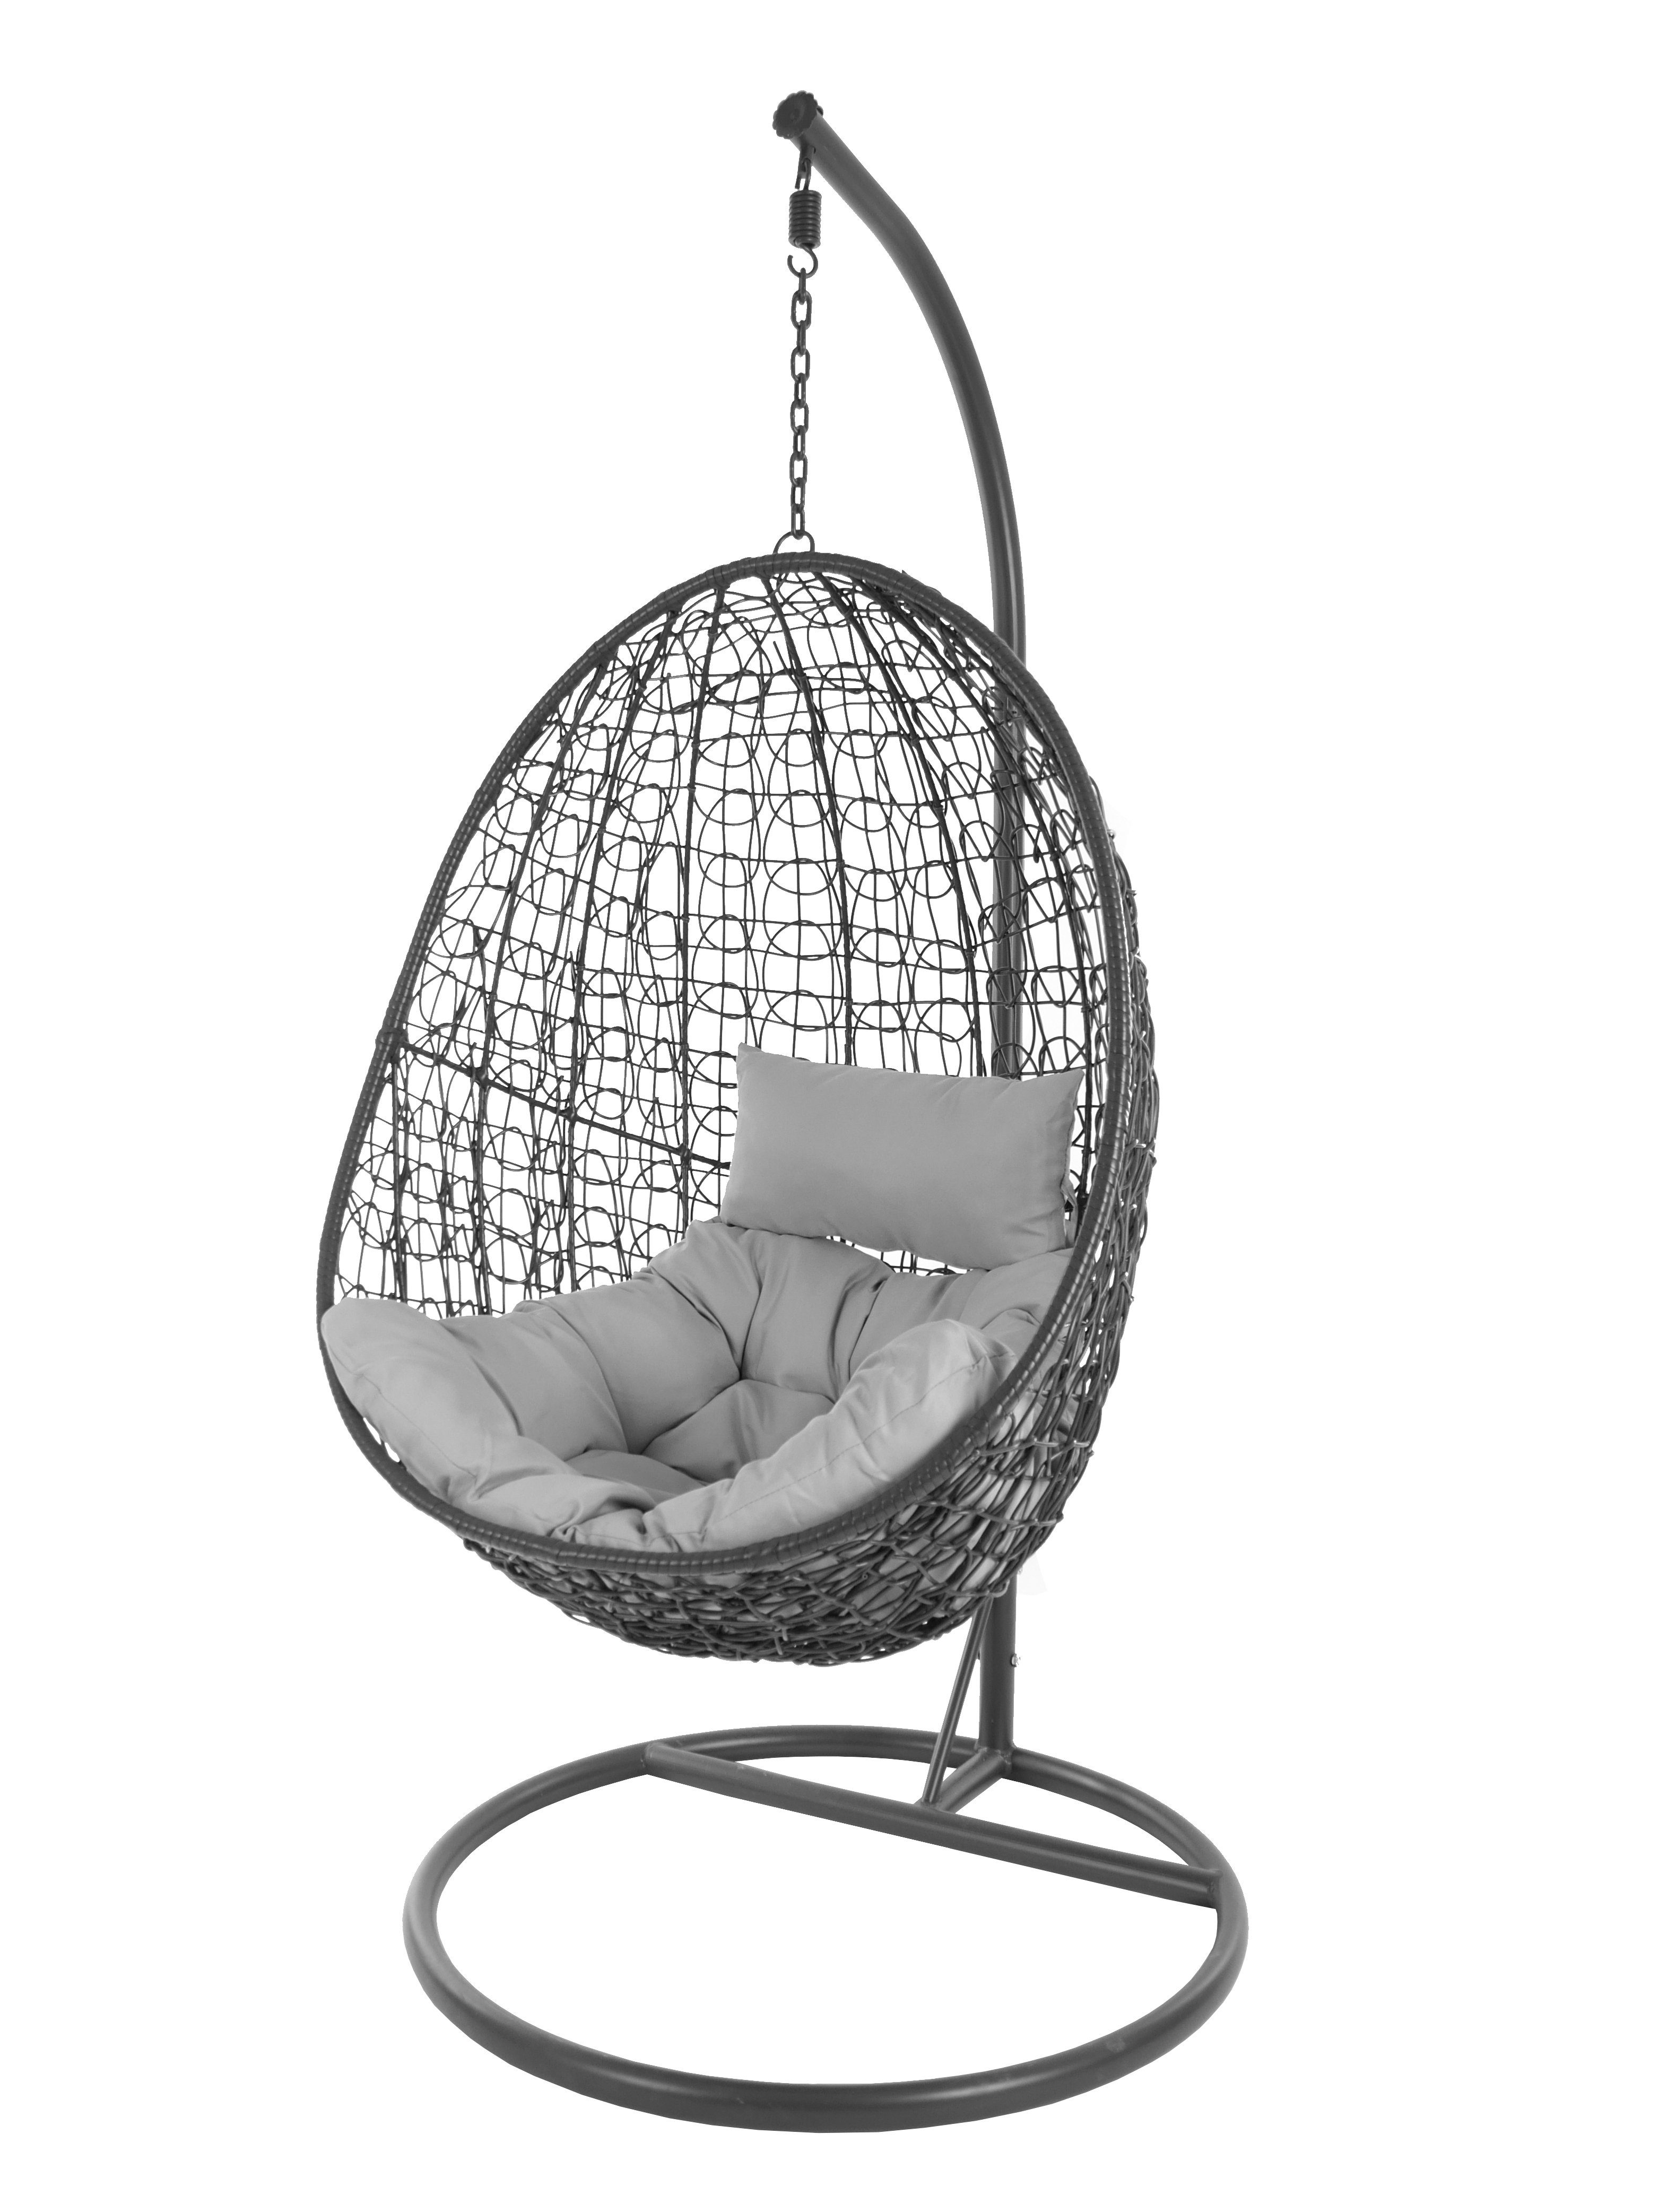 KIDEO Hängesessel Capdepera Hängesessel mit und Schwebesessel grau Chair, Swing Kissen, (8008 Gestell cloud) Loungemöbel anthrazit, moderner